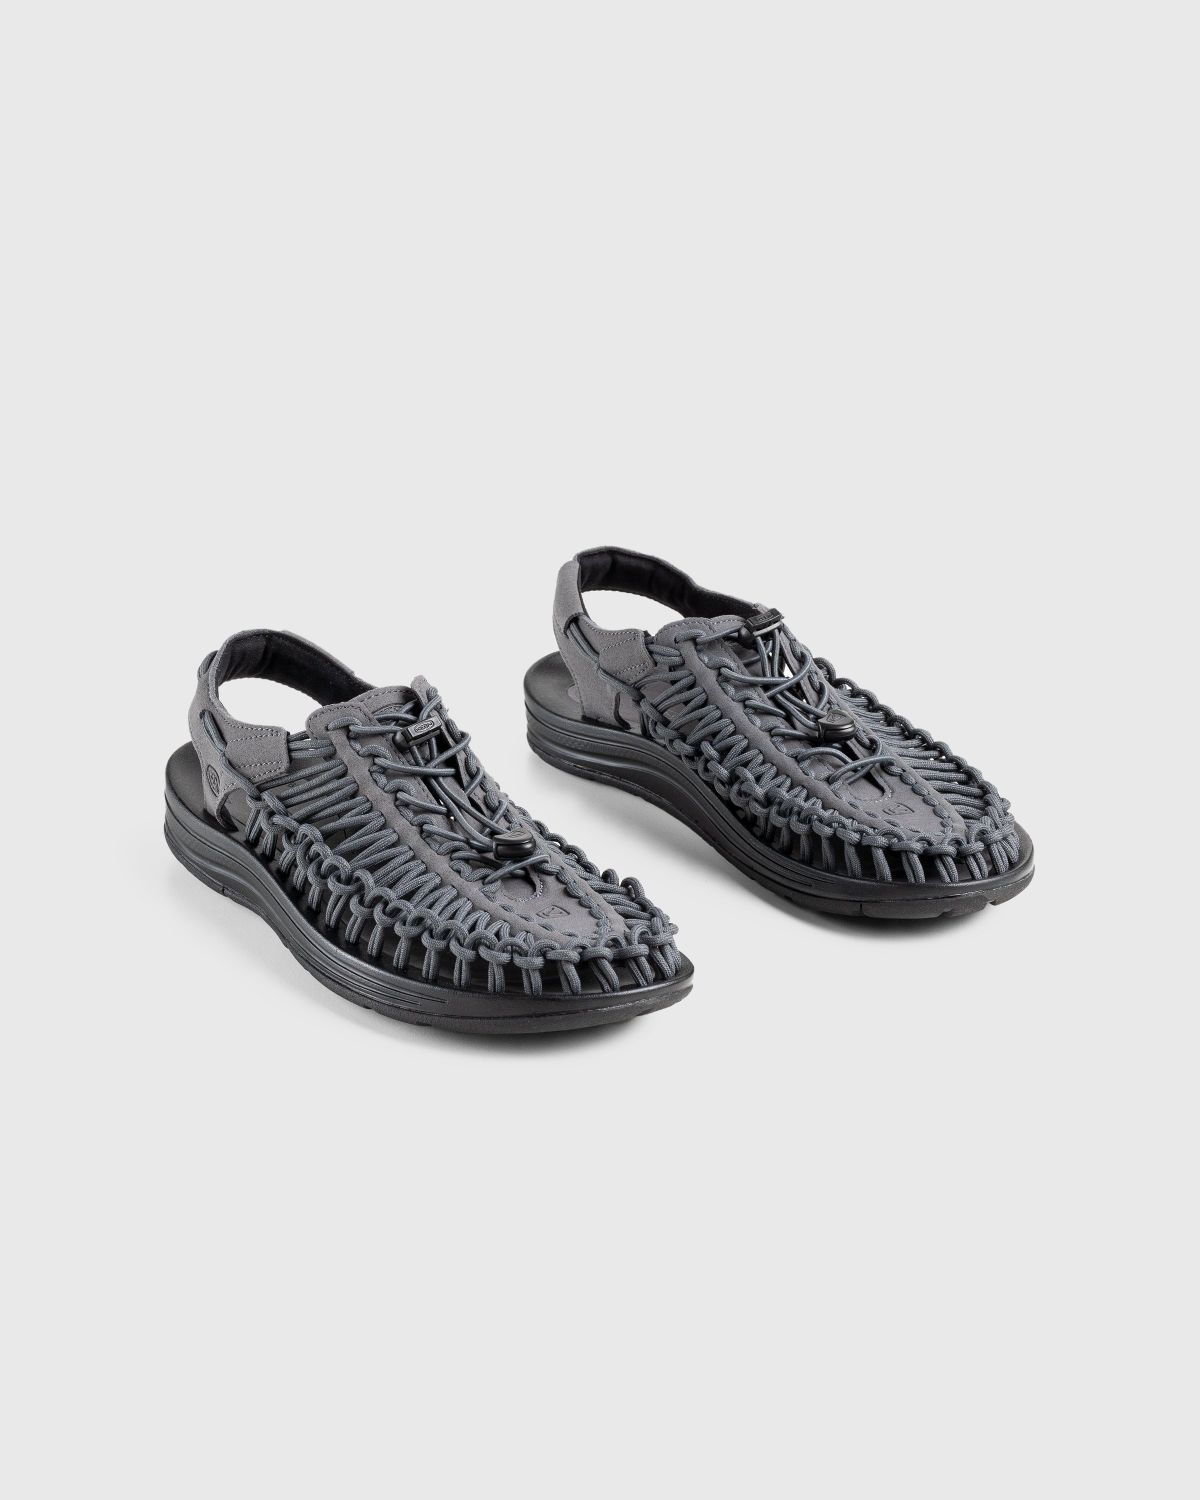 Keen – Uneek Magnet/Black - Sandals & Slides - Grey - Image 3